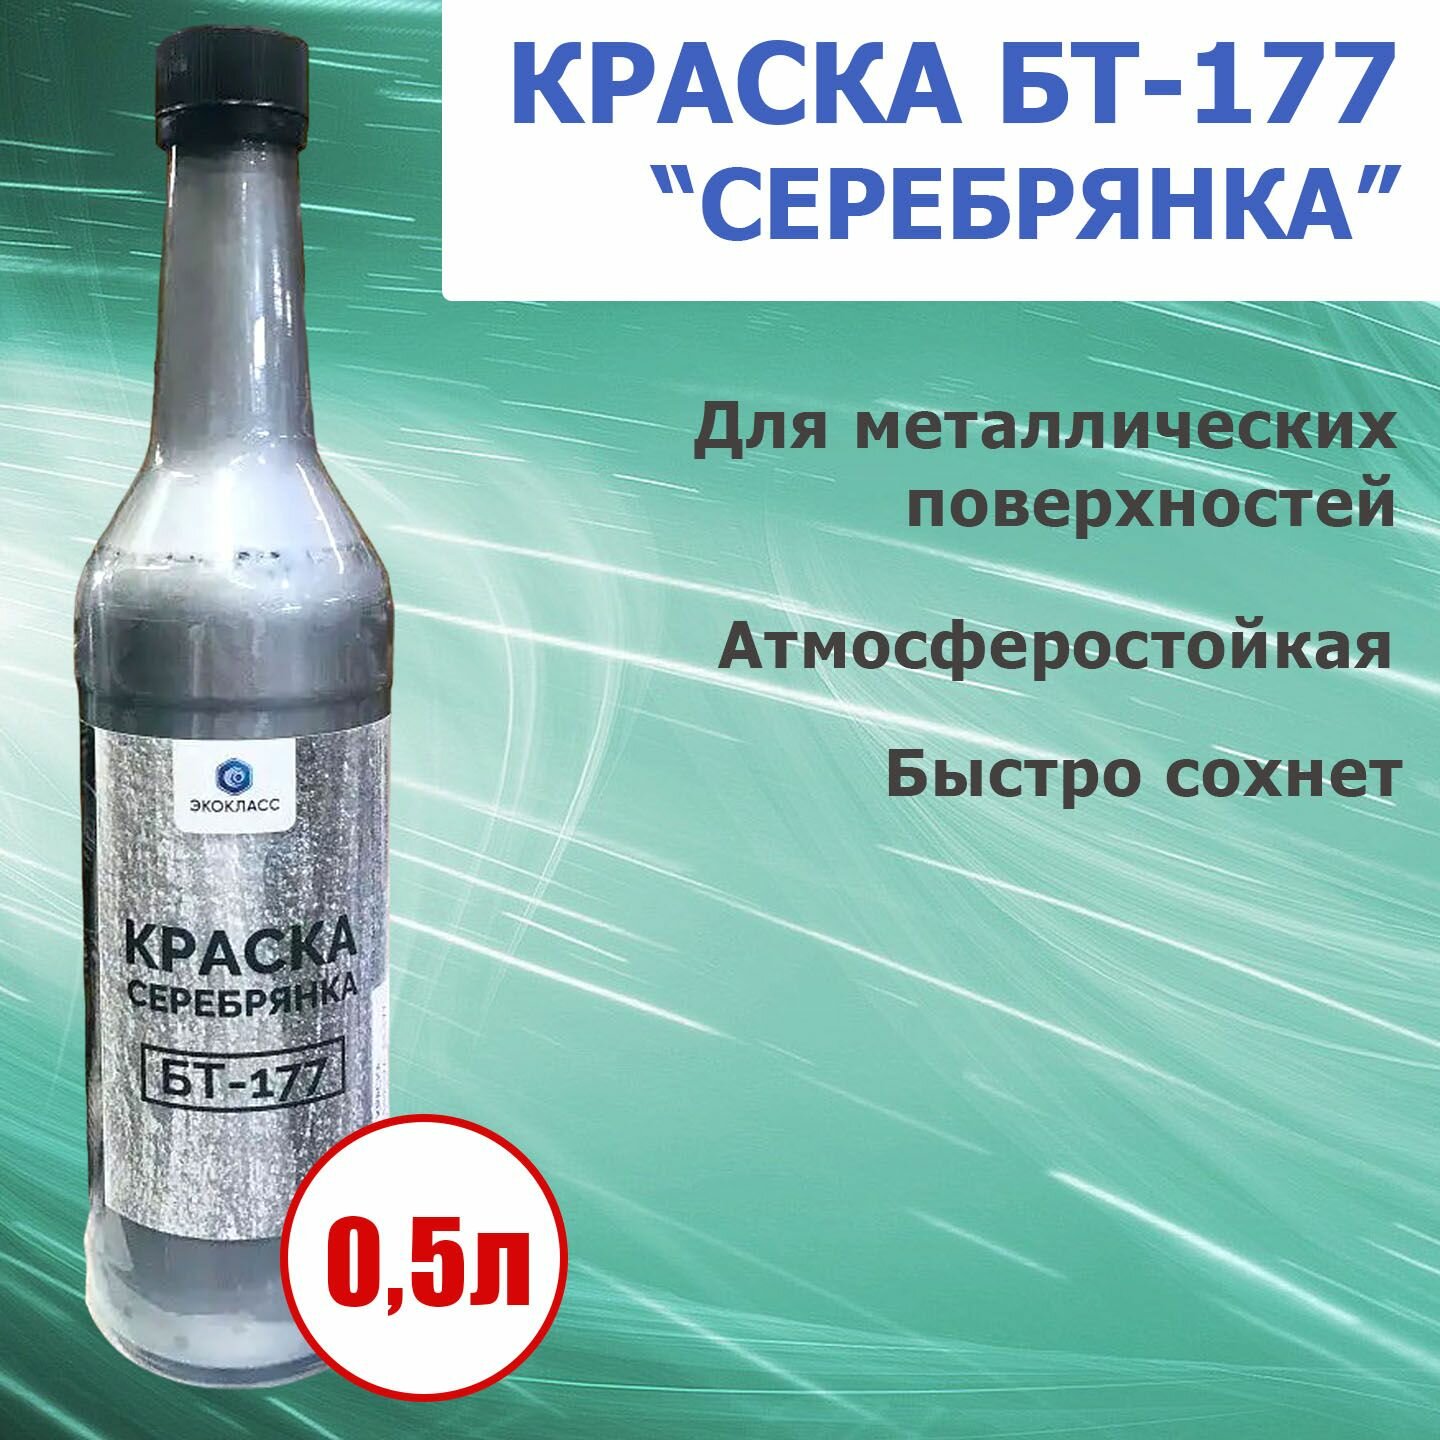 Краска "Серебрянка" БТ-177 для металлических конструкций, атмосферостойкая, 0,5л - 1 шт.